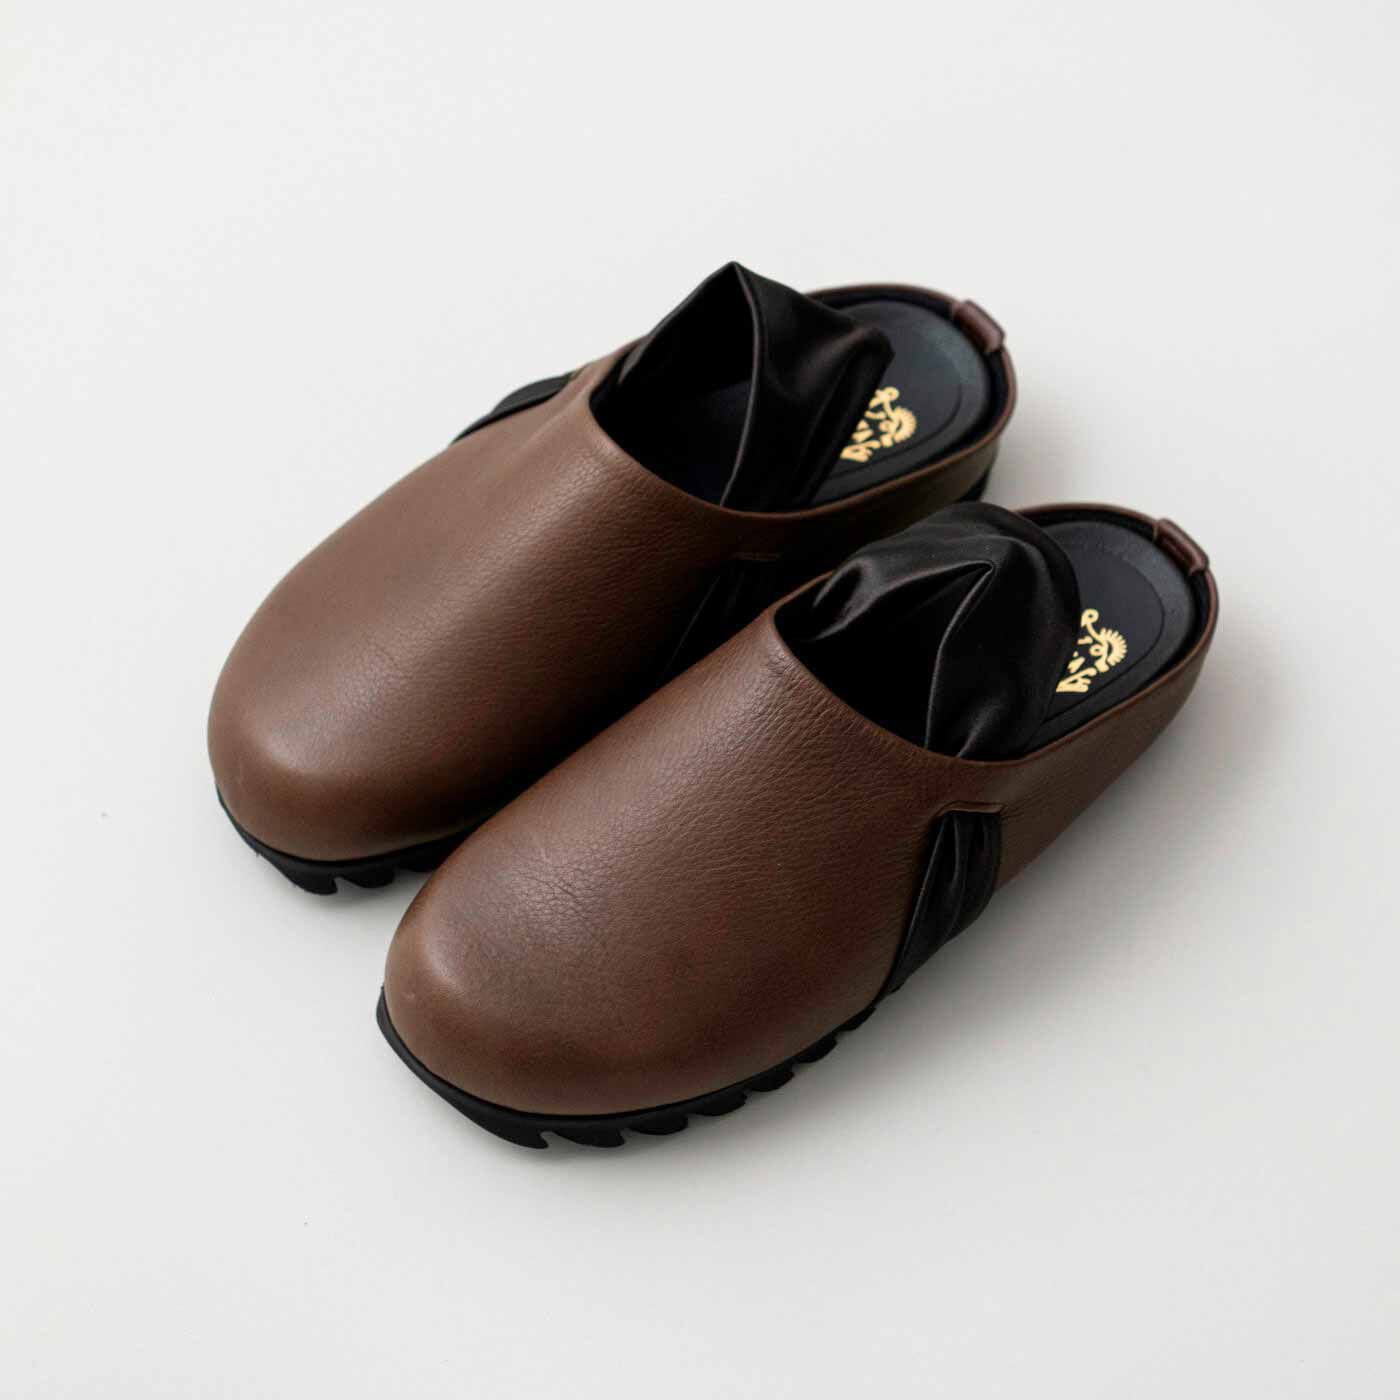 ＆Stories|長田の靴職人が作った　職人本革のパニーニサボシューズ〈ショコラ色〉|縮こまった足指が広がって、どこまでも歩けてしまいそう。感動的な履きやすさ。